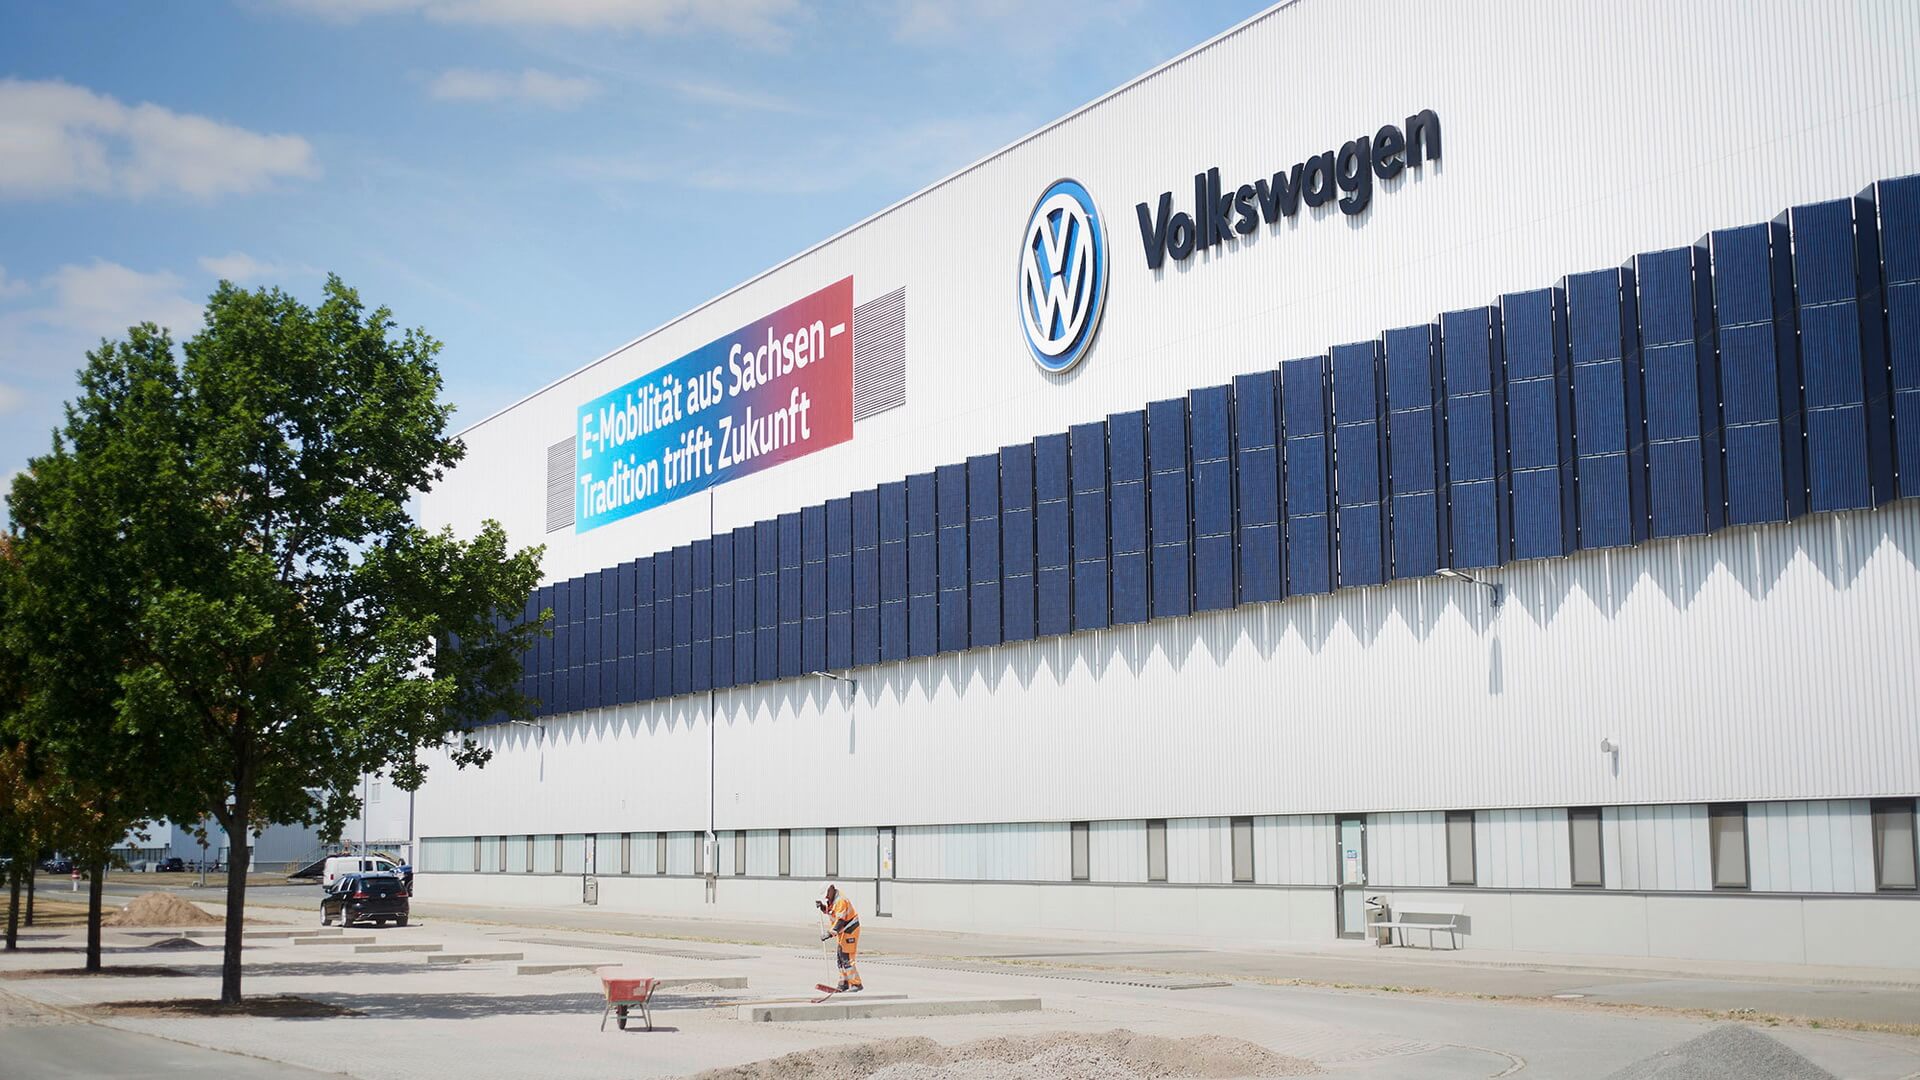 Volkswagen полностью переоборудовал крупный автомобильный завод для производства электромобилей вместо автомобилей с ДВС в Цвиккау